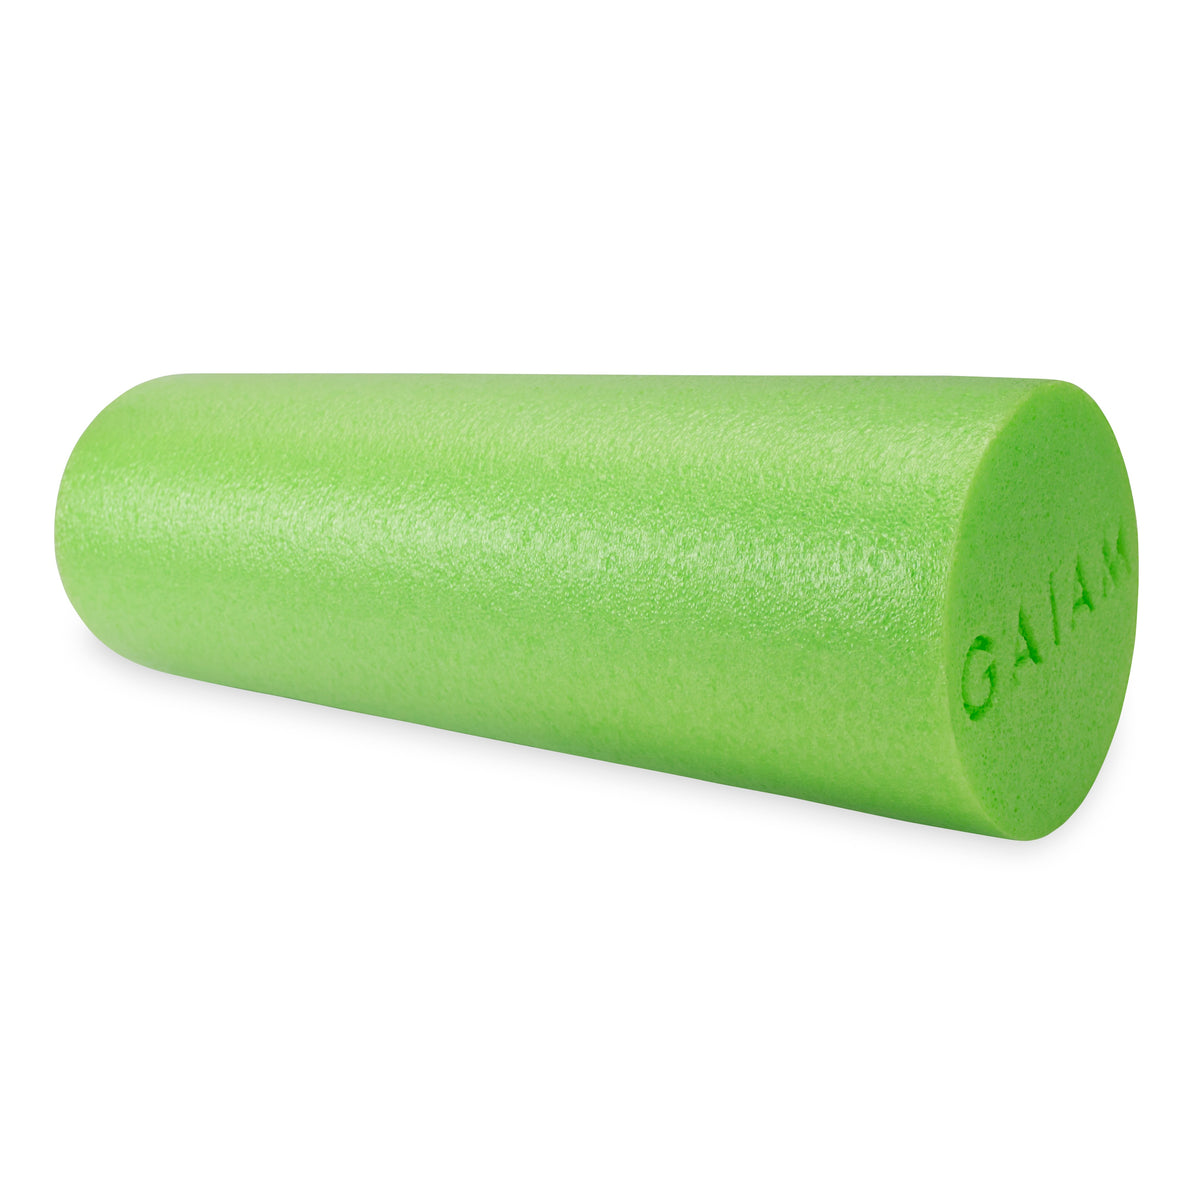  Gaiam Restore Multi-Grip Stretch Strap, Green : Yoga